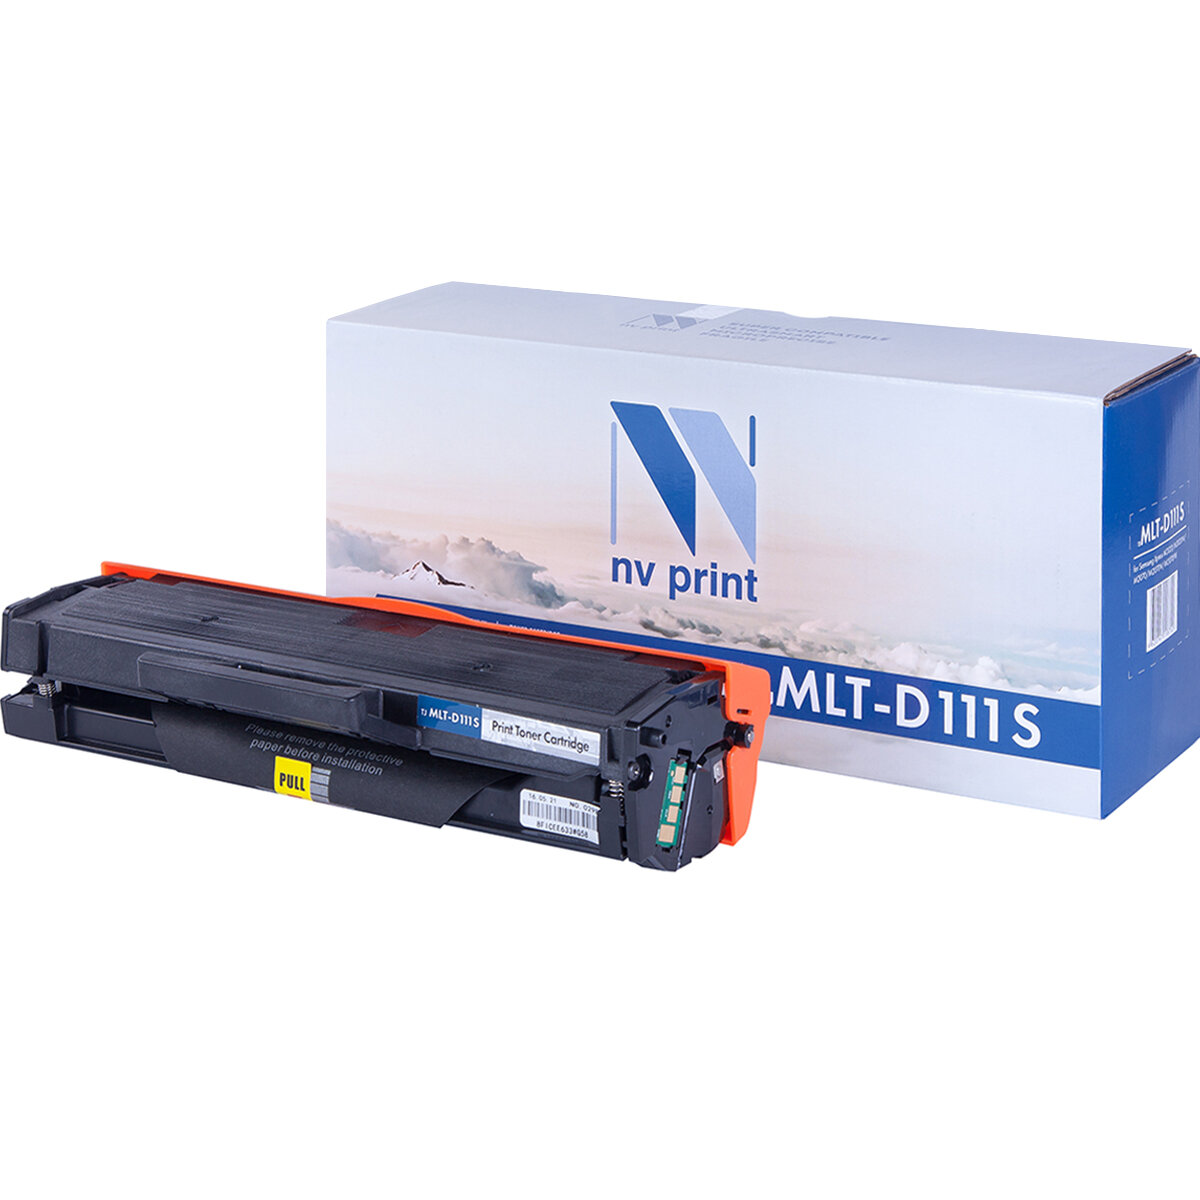 Совместимый картридж NV Print NV-MLT-D111S (NV-MLTD111S) для Samsung Xpress M2020, M2020W, M2070, M2070W, M2070FW